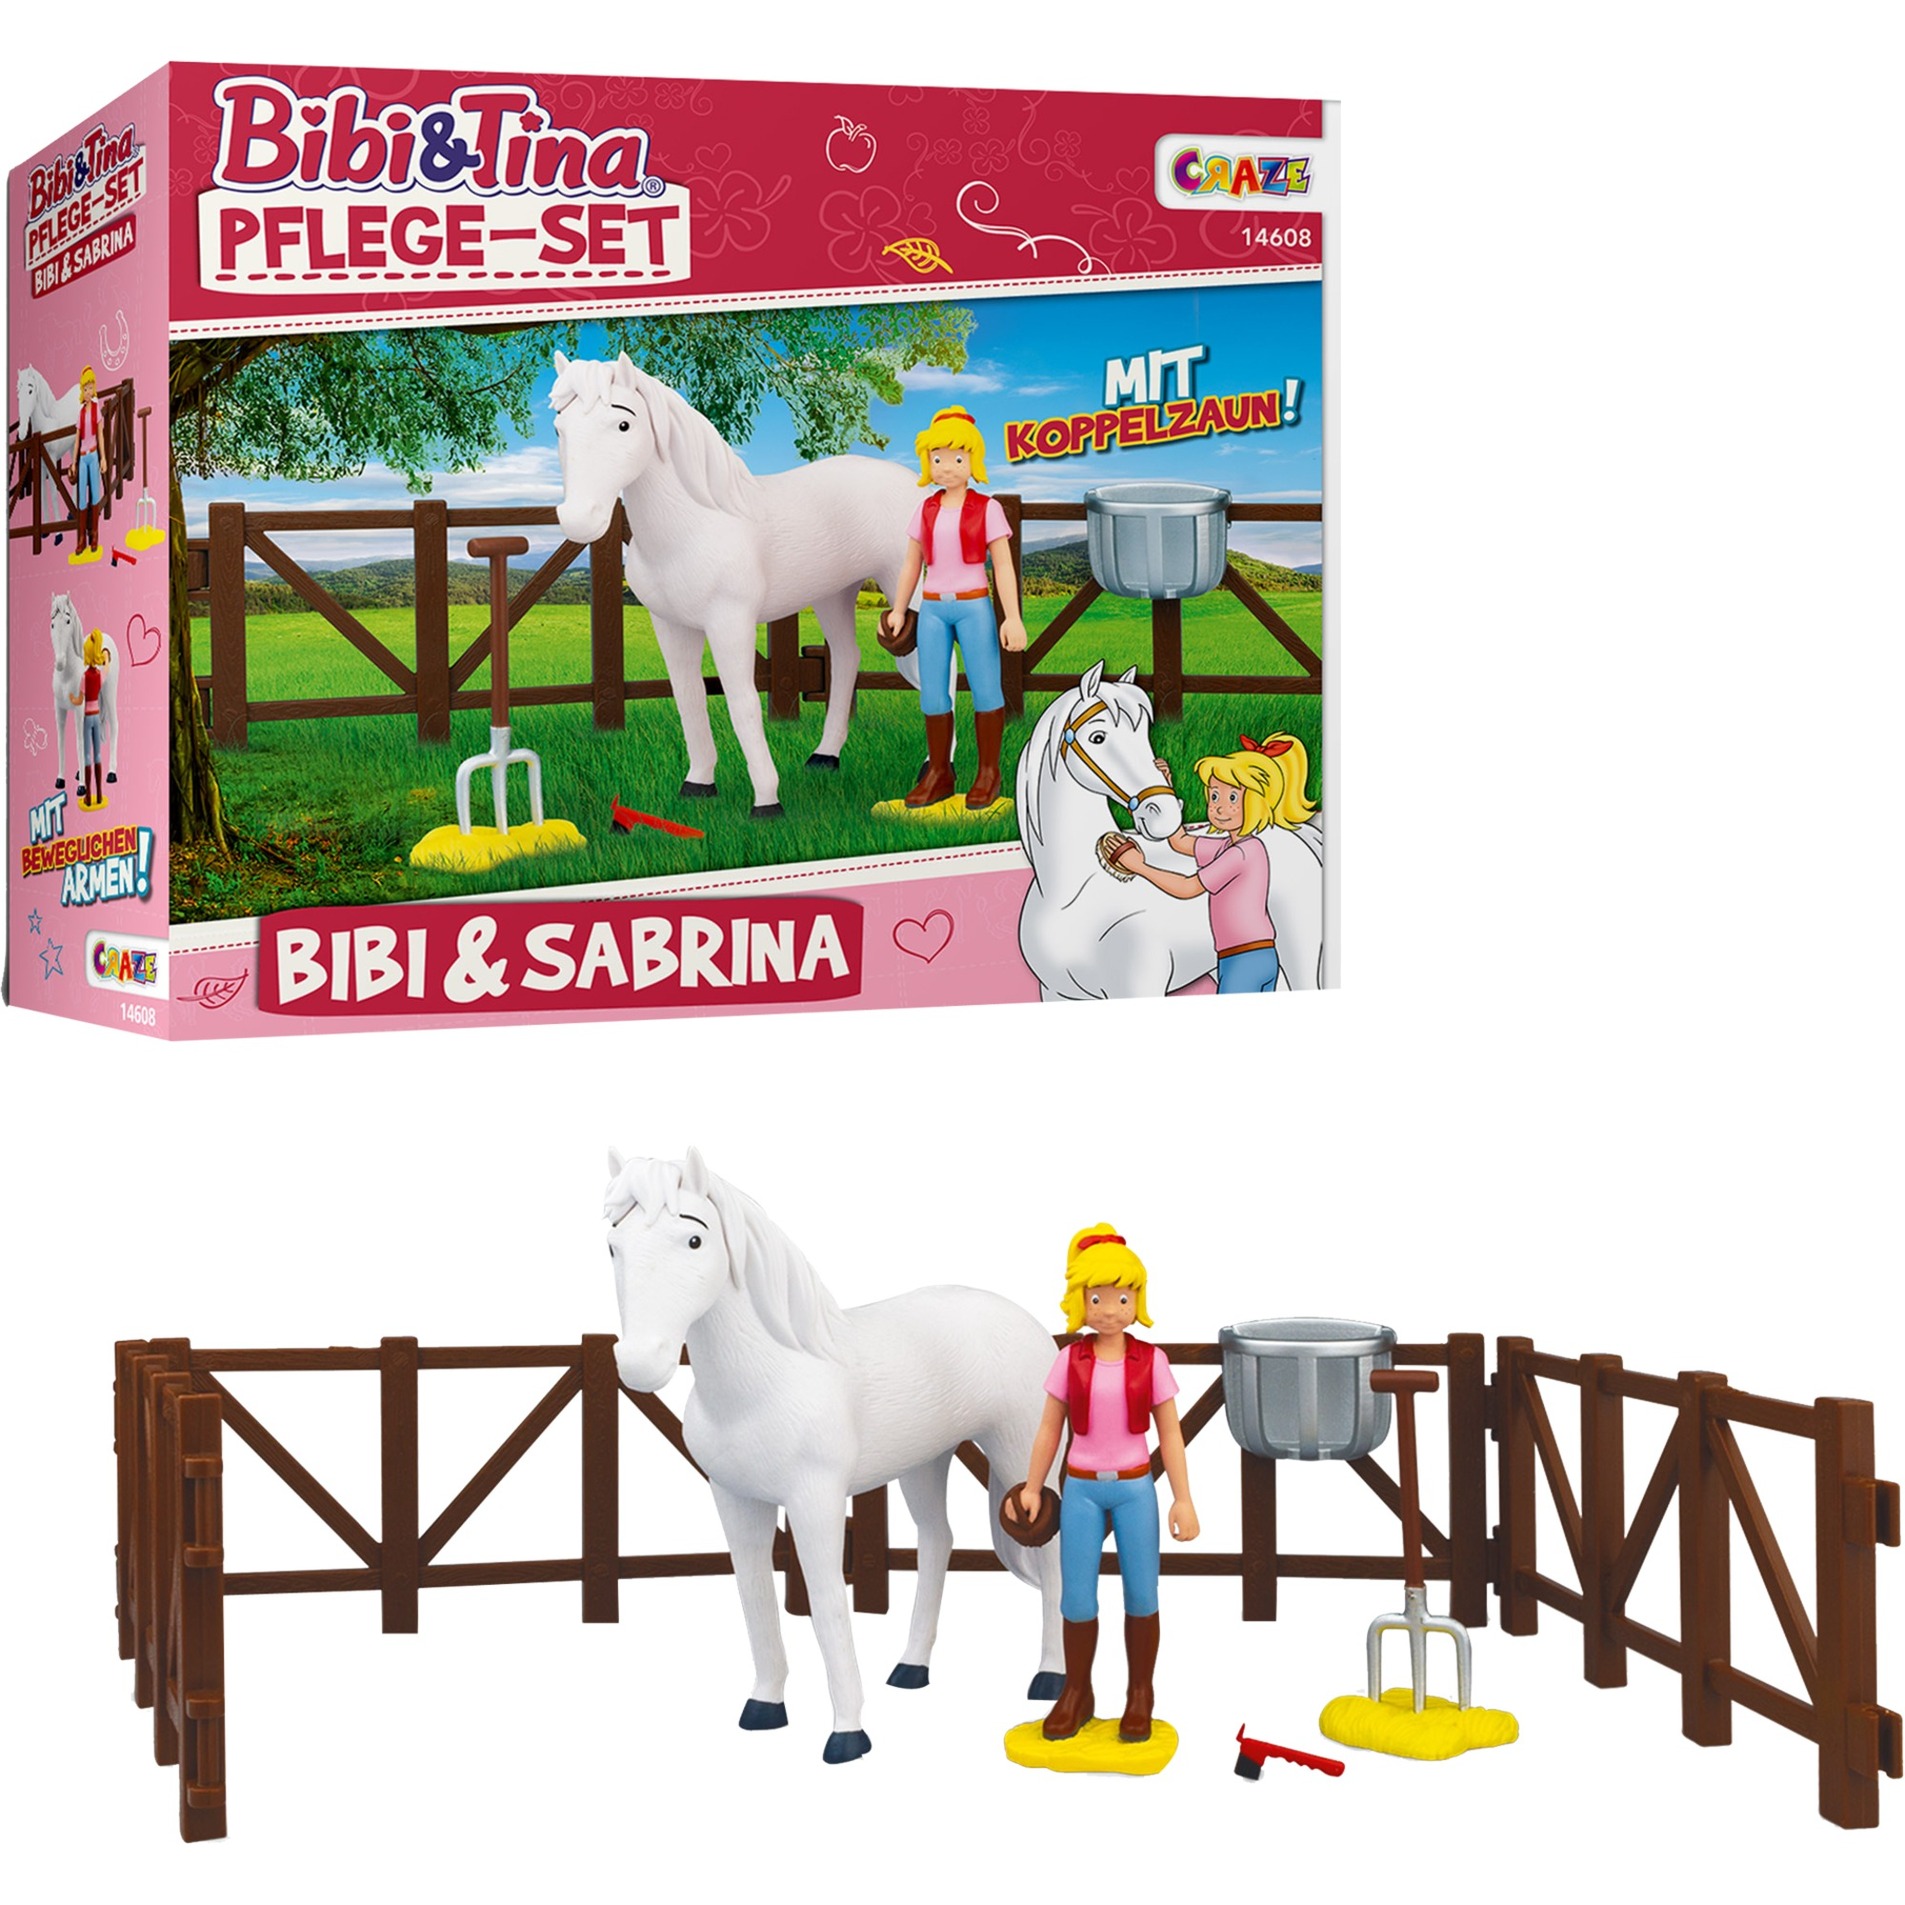 Image of Alternate - Bibi & Tina Pflege-Set - Bibi & Sabrina, Spielfigur online einkaufen bei Alternate